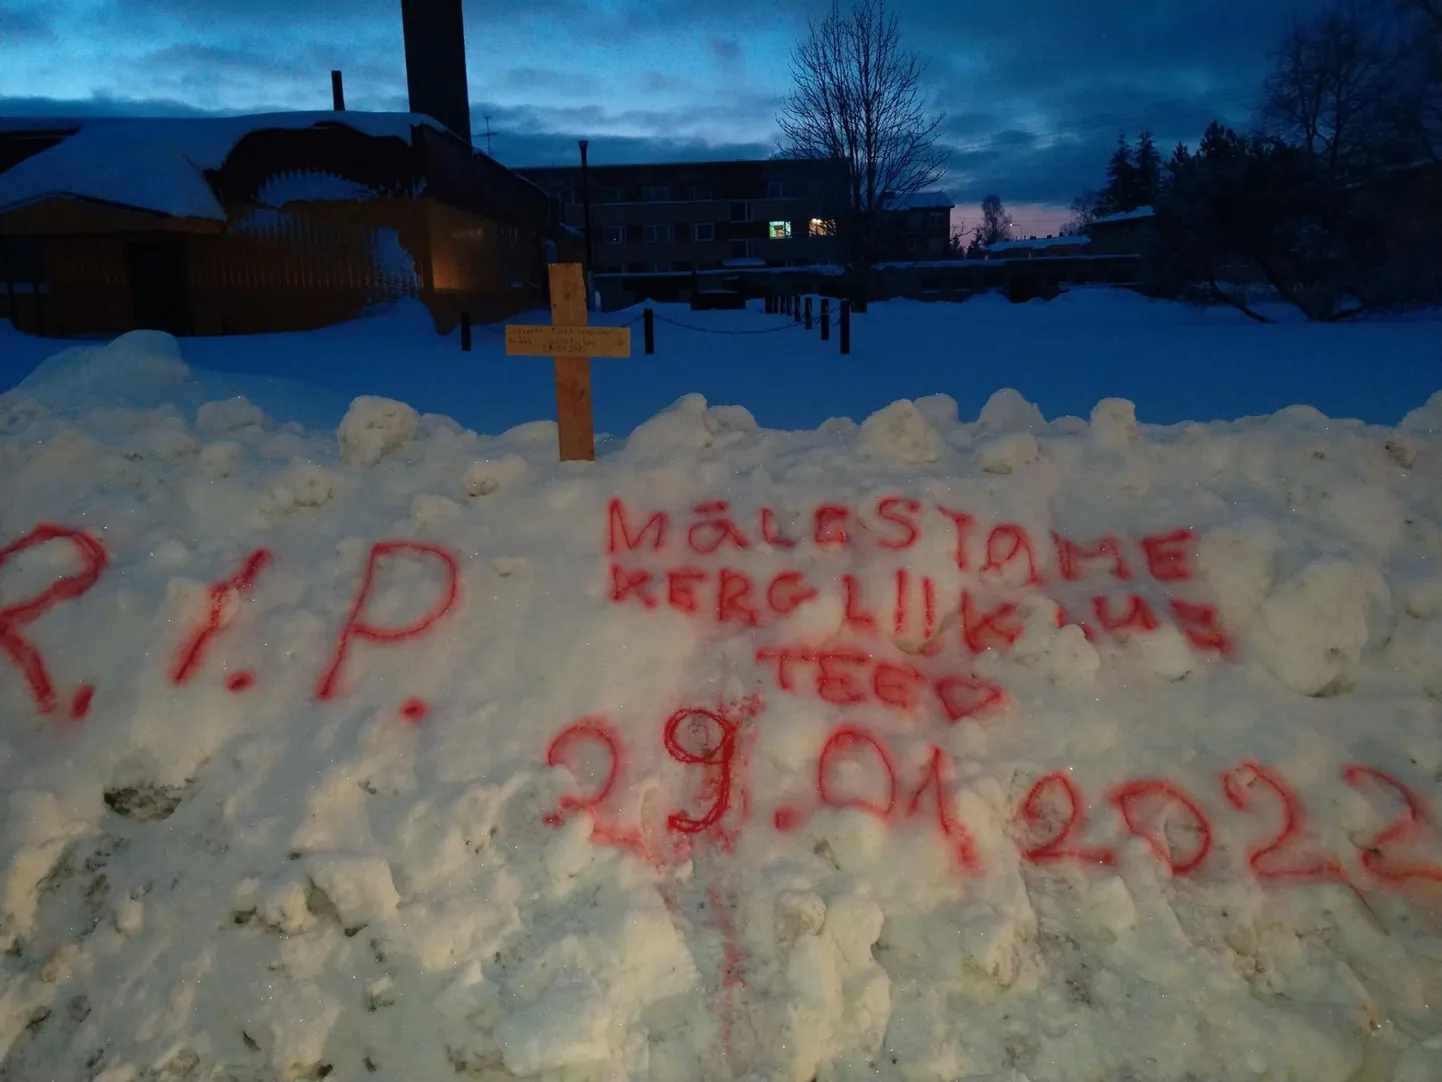 Sergei Deket püstitas mälestusmärgi Laekvere–Moora kergliiklusteele, mis lükati lume alla, teisisõnu "hukkus" torm Valteri läbi.